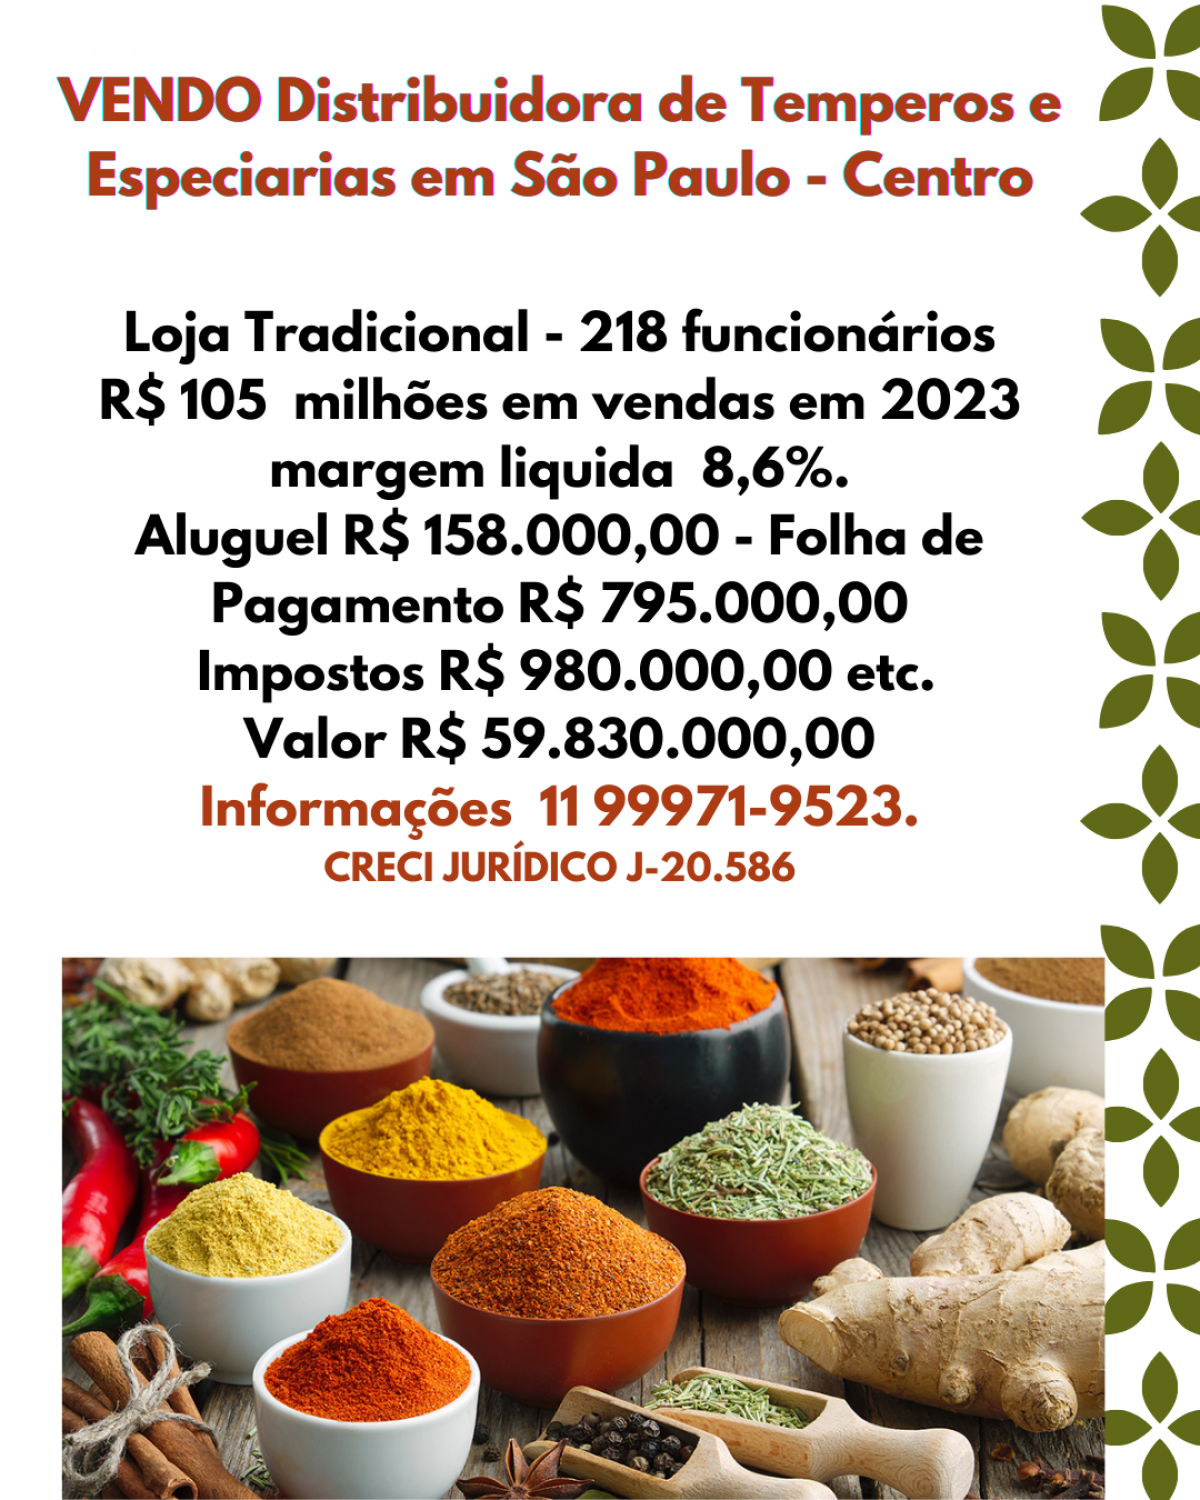 VENDO.  Grande Distribuidora de Alimentos no Centro de São Paulo - SP.